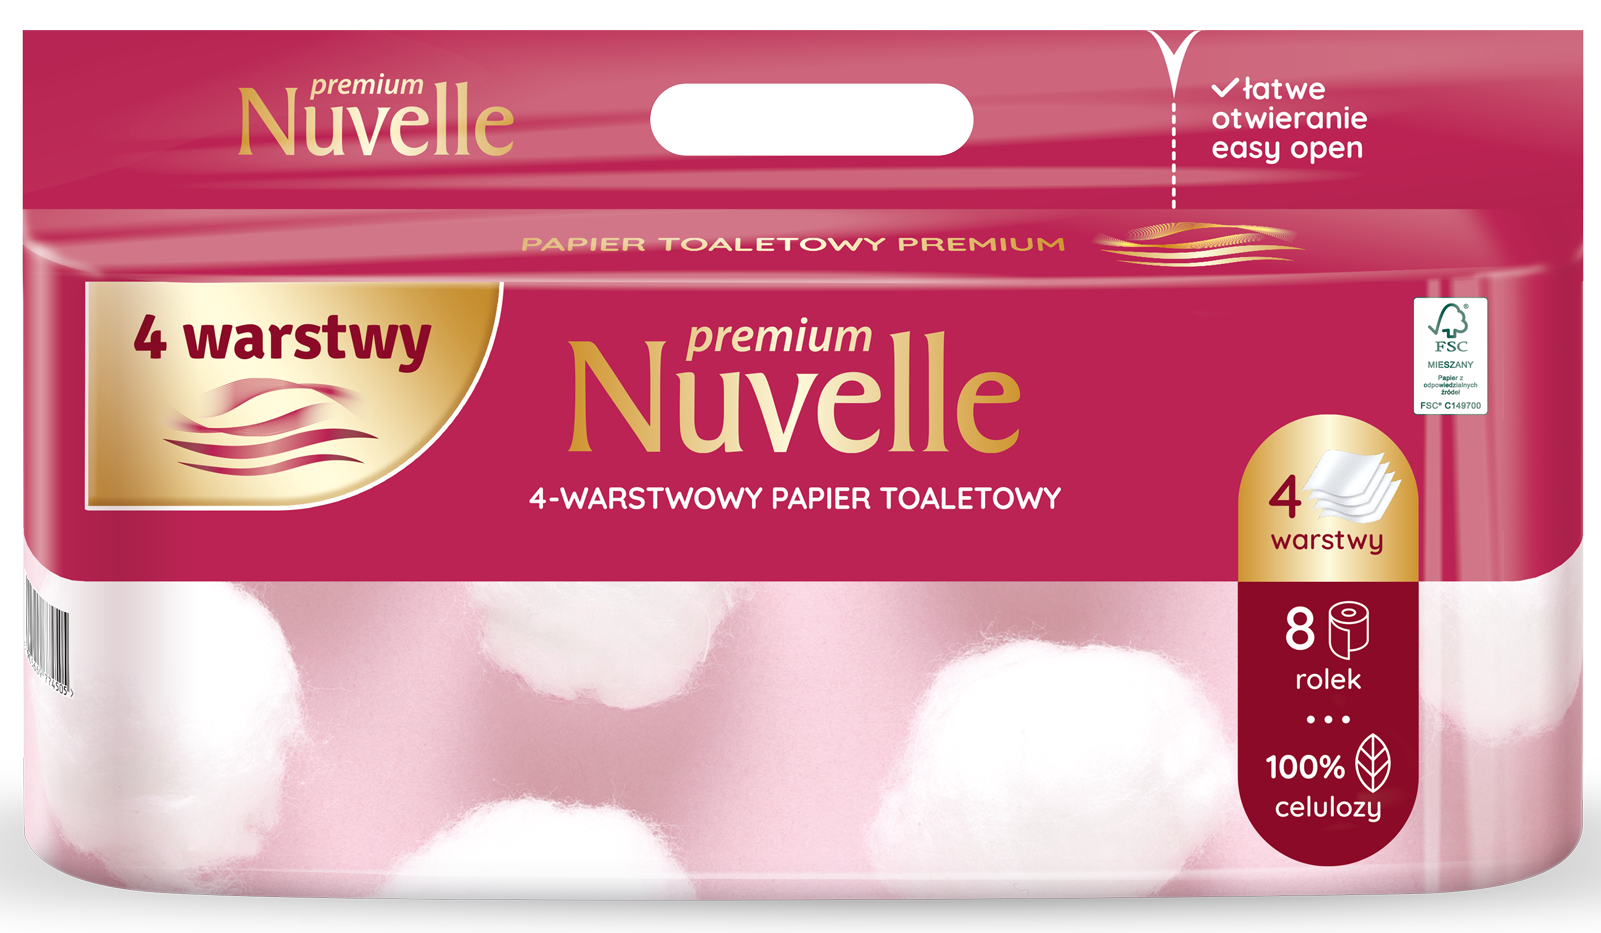 Papier toaletowy Nuvelle Premium 4 warstwy 8 rolek